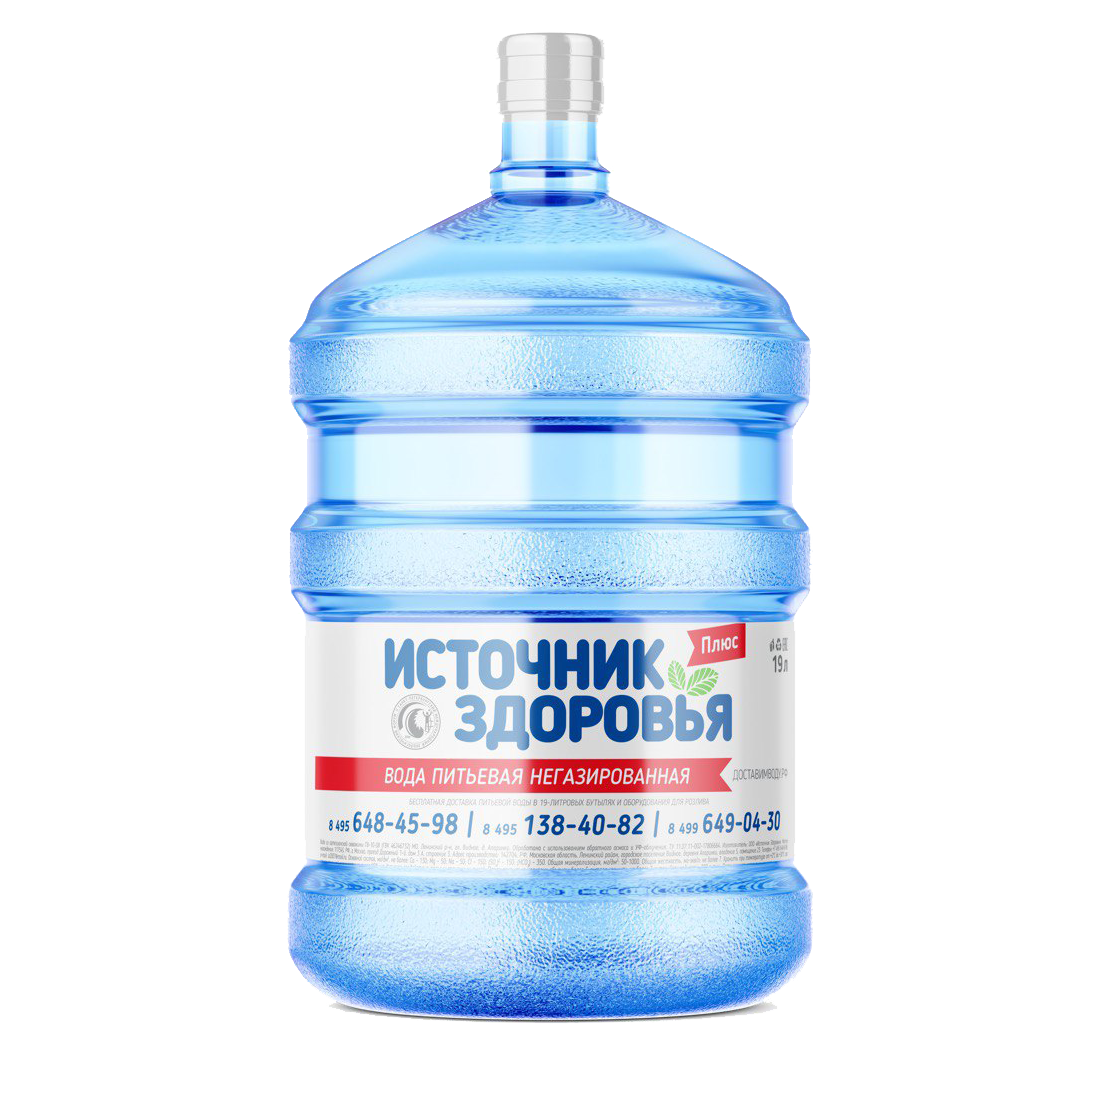 Питьевая артезианская вода "Источник здоровья" 19л ПЛЮС